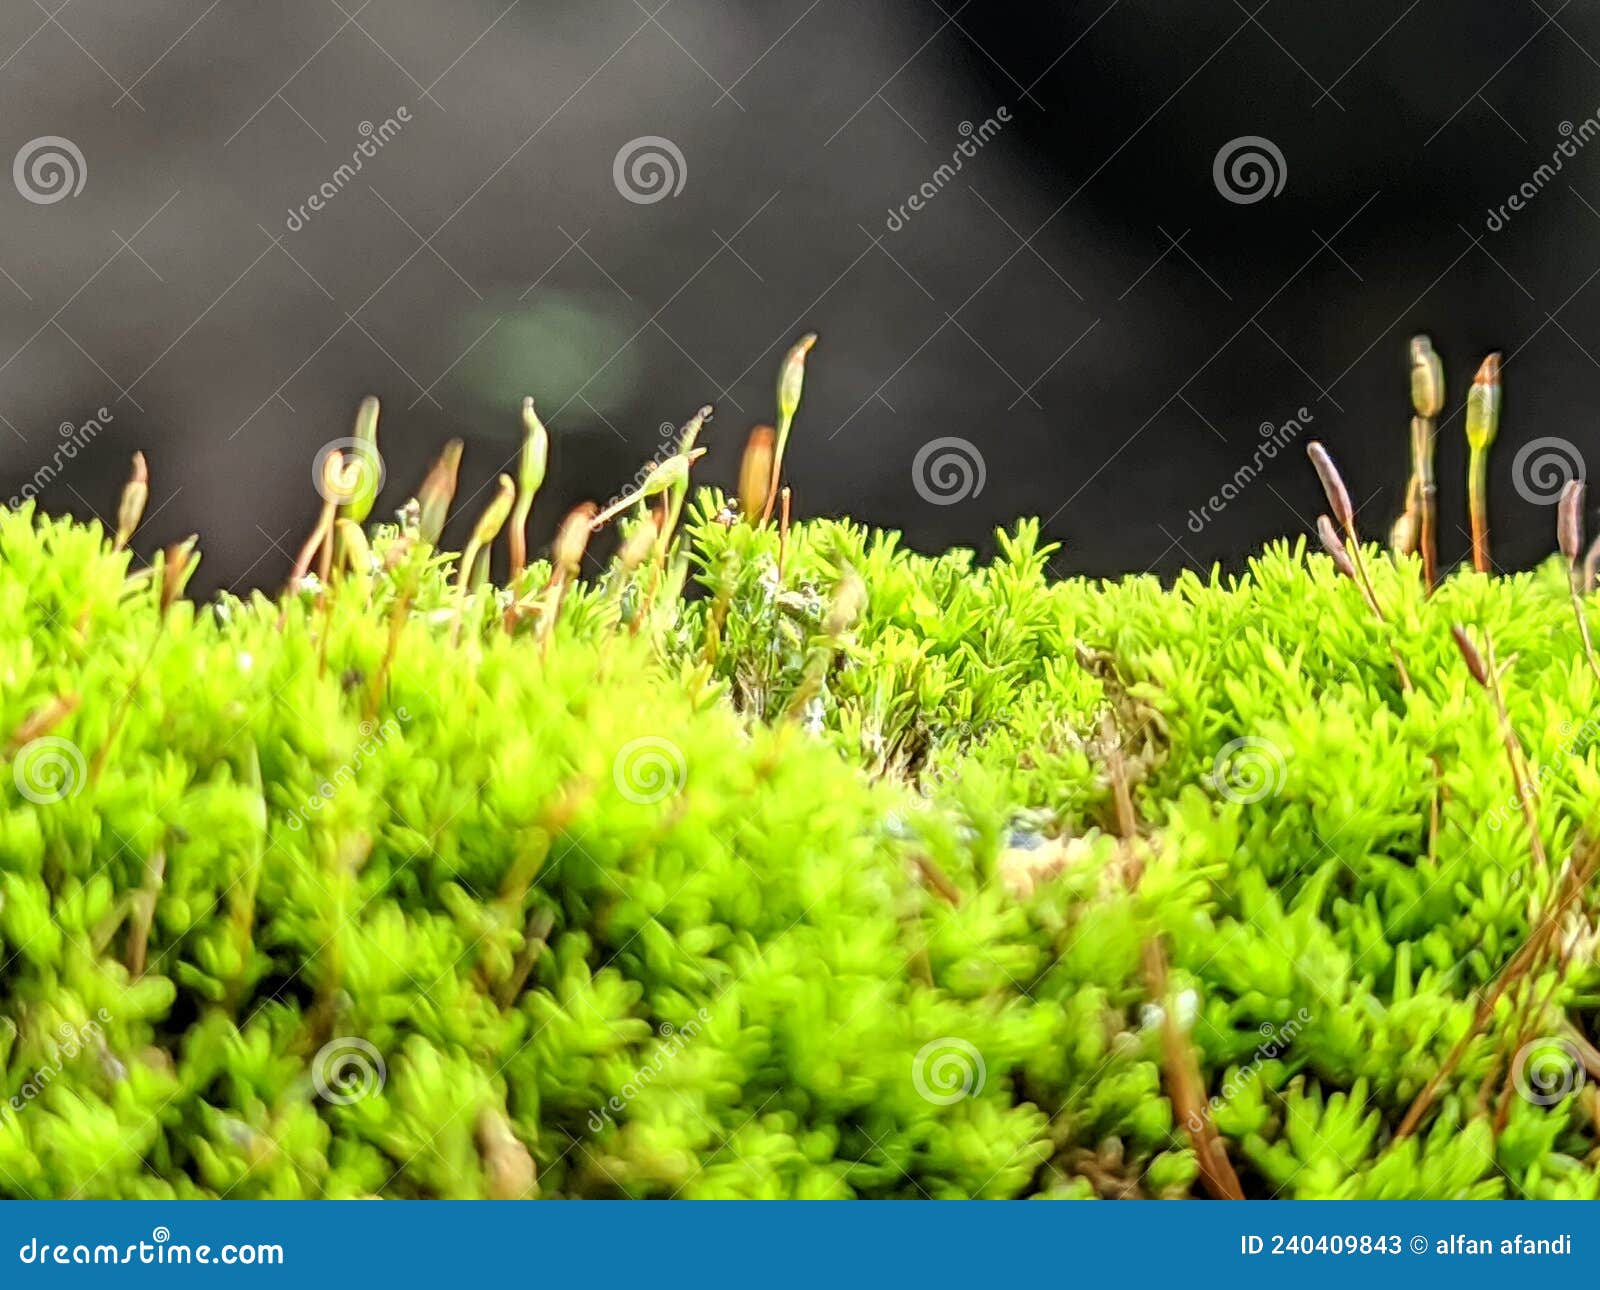 naturall green moss